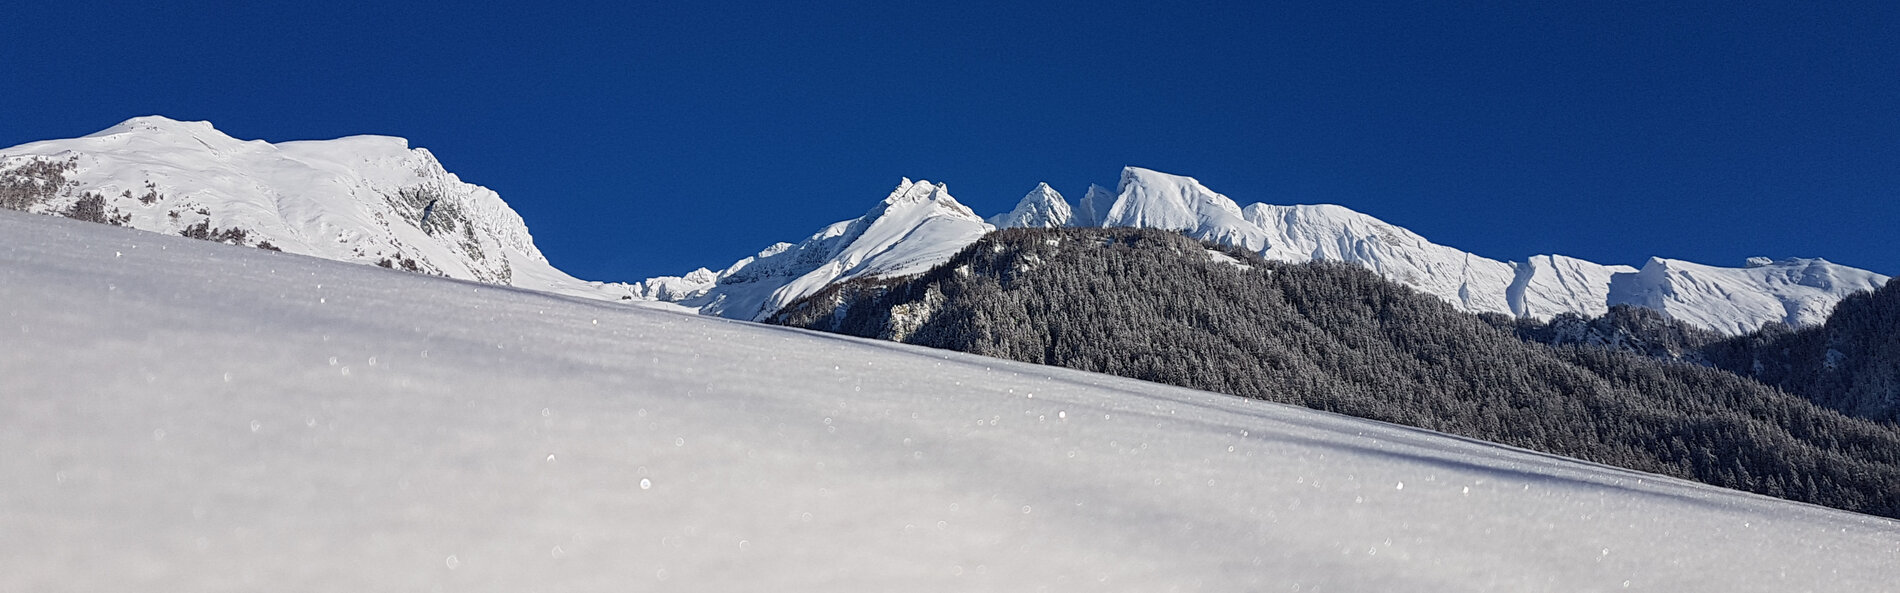 Winterlandschaft. Im Vordergrund glitzernder Schnee. Im Hintergrund eine verschneite, sonnenbeschienene Bergkette © TVB Osttirol, B. Assmair